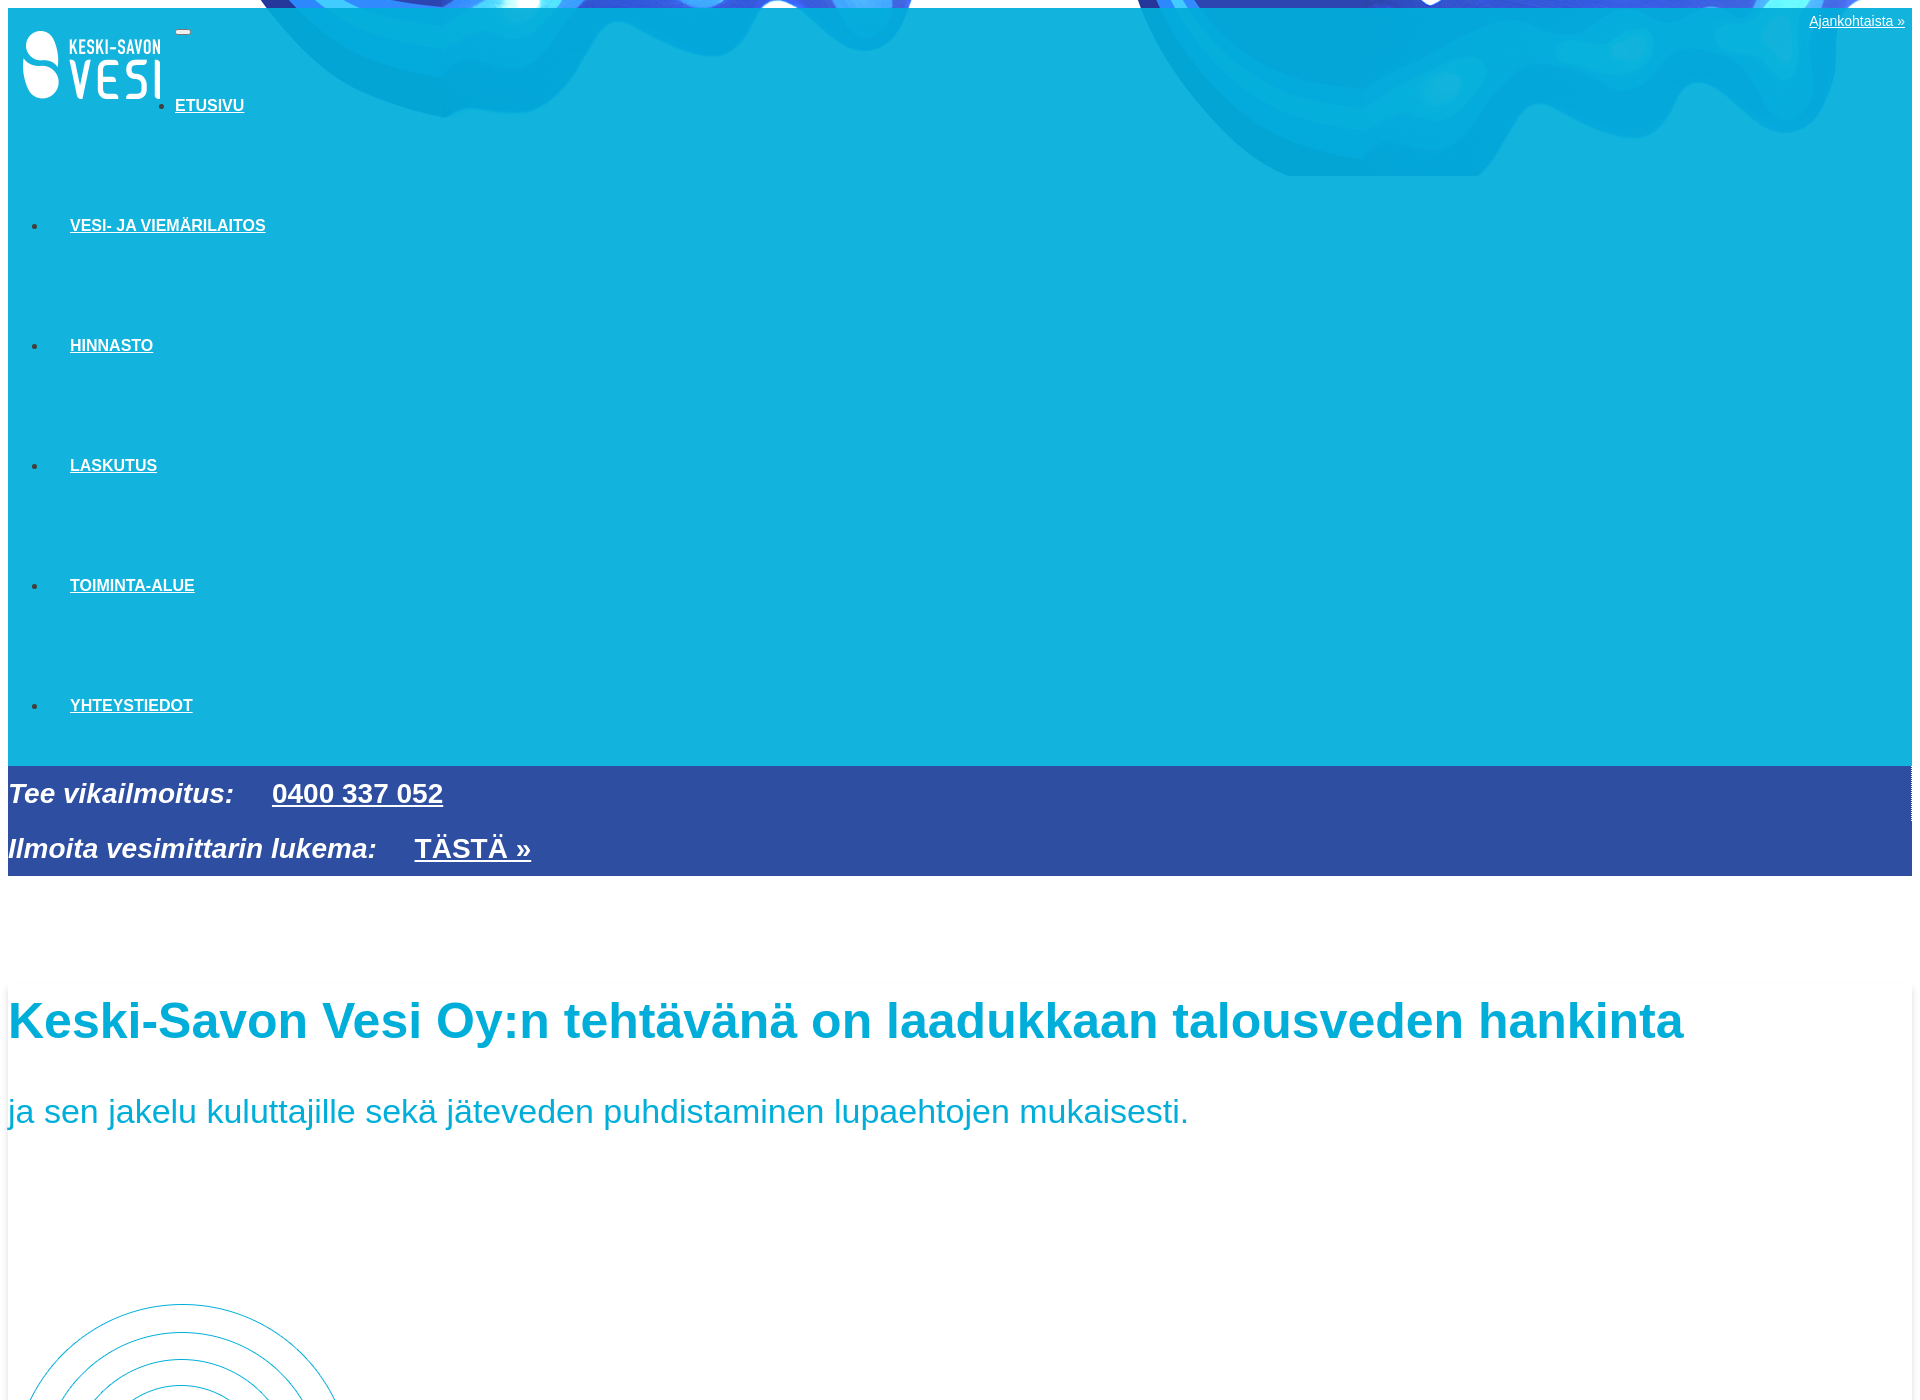 Skärmdump för keskisavonvesi.fi